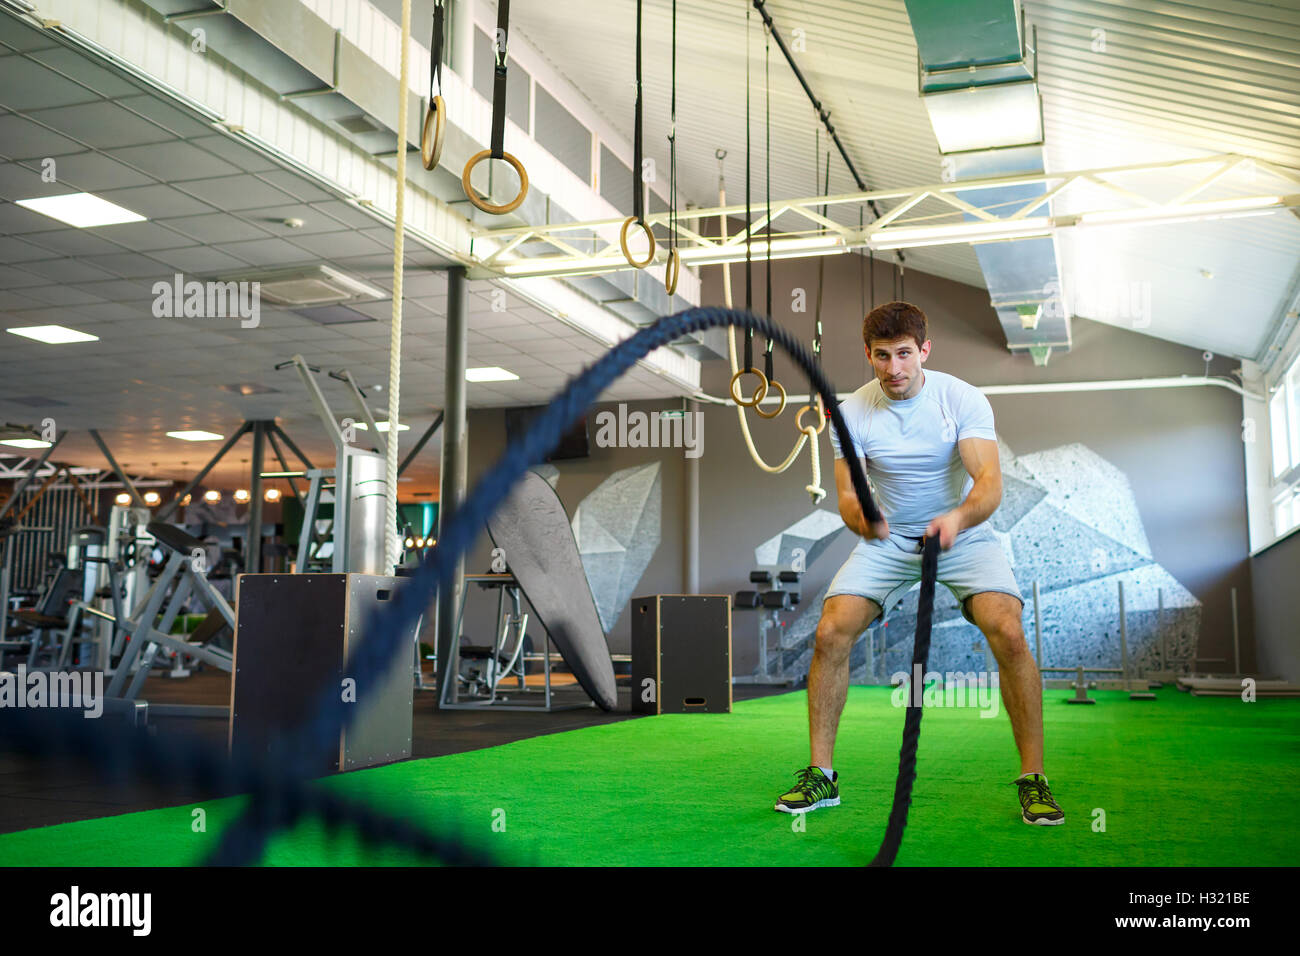 L'homme athlétique bataille avec la corde dans l'entraînement fonctionnel fitness gym Banque D'Images